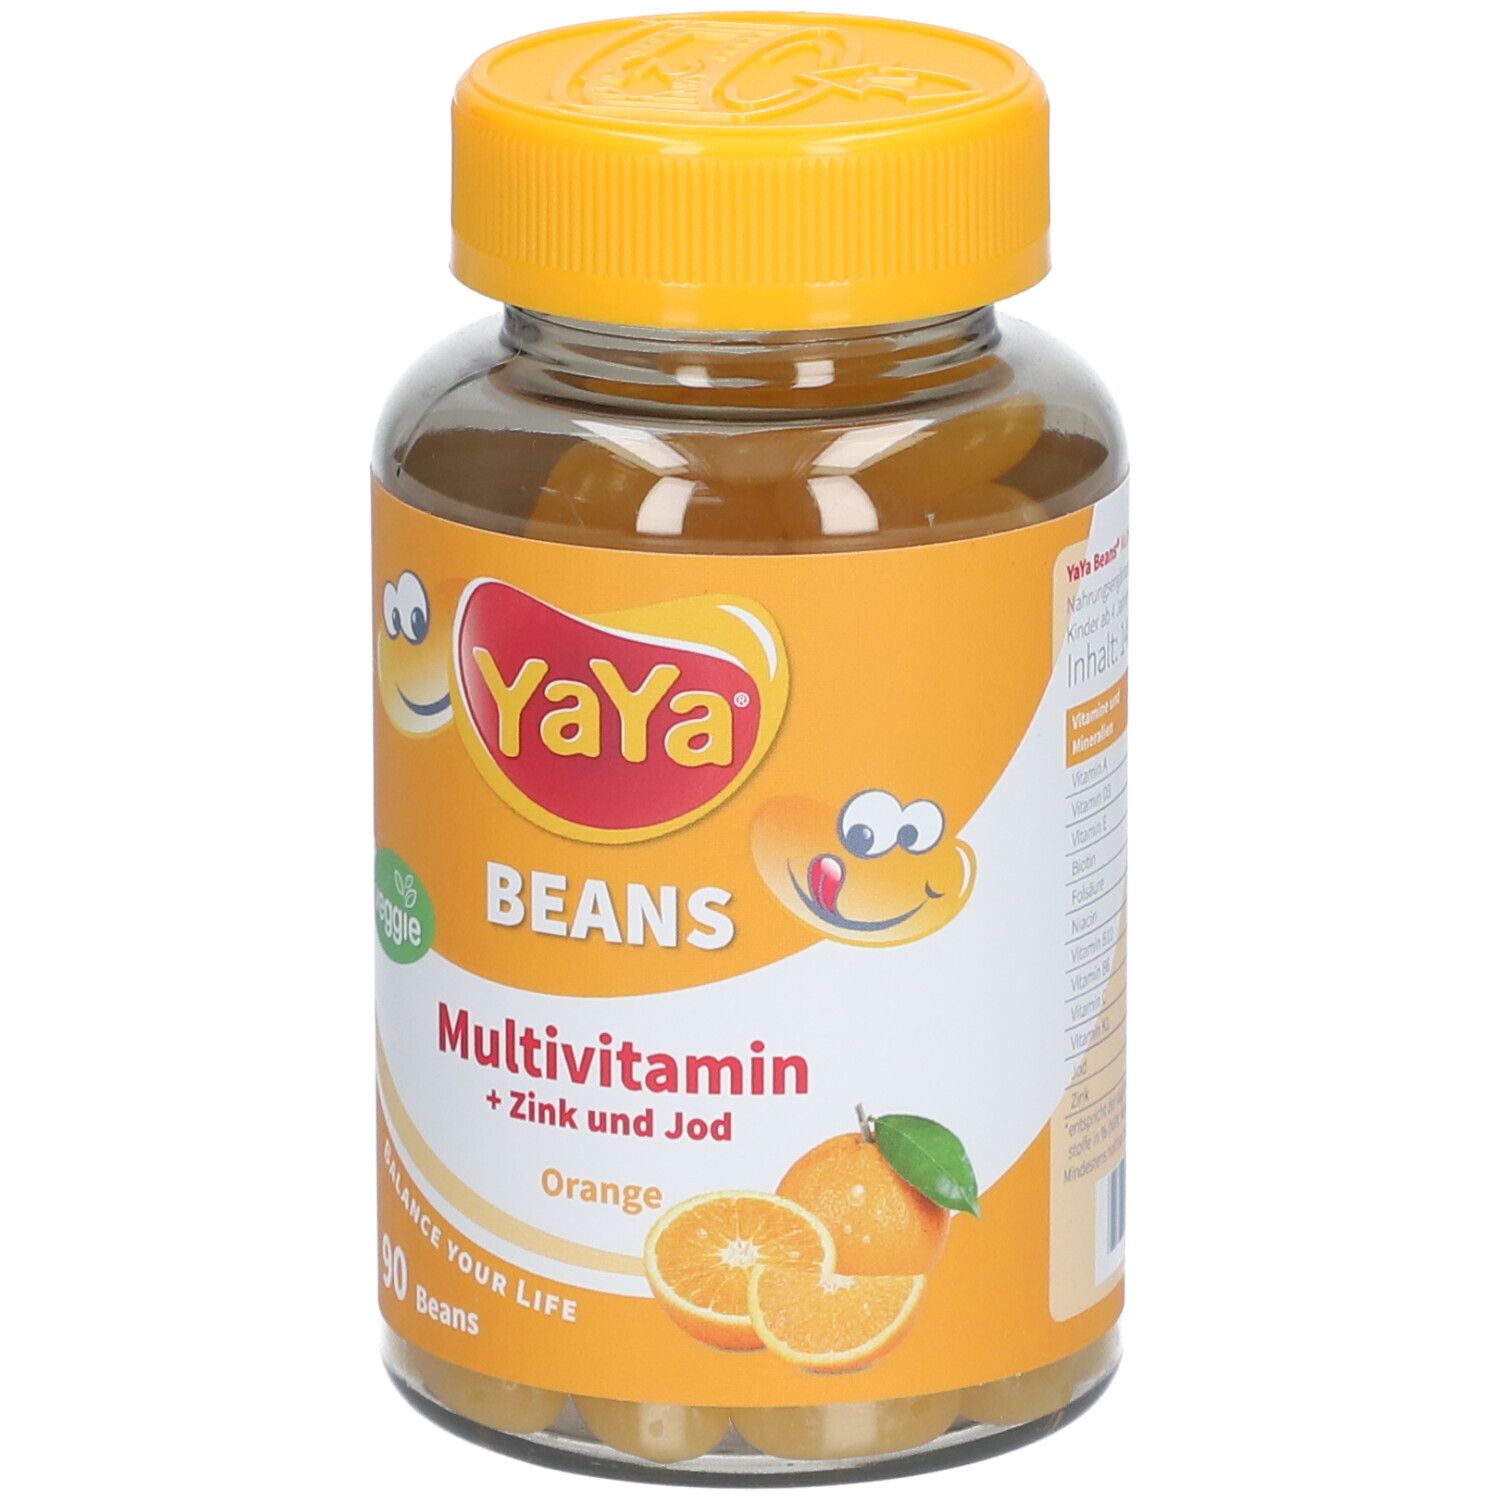 YaYa® Beans Multivitamin + Zink und Jod Orange